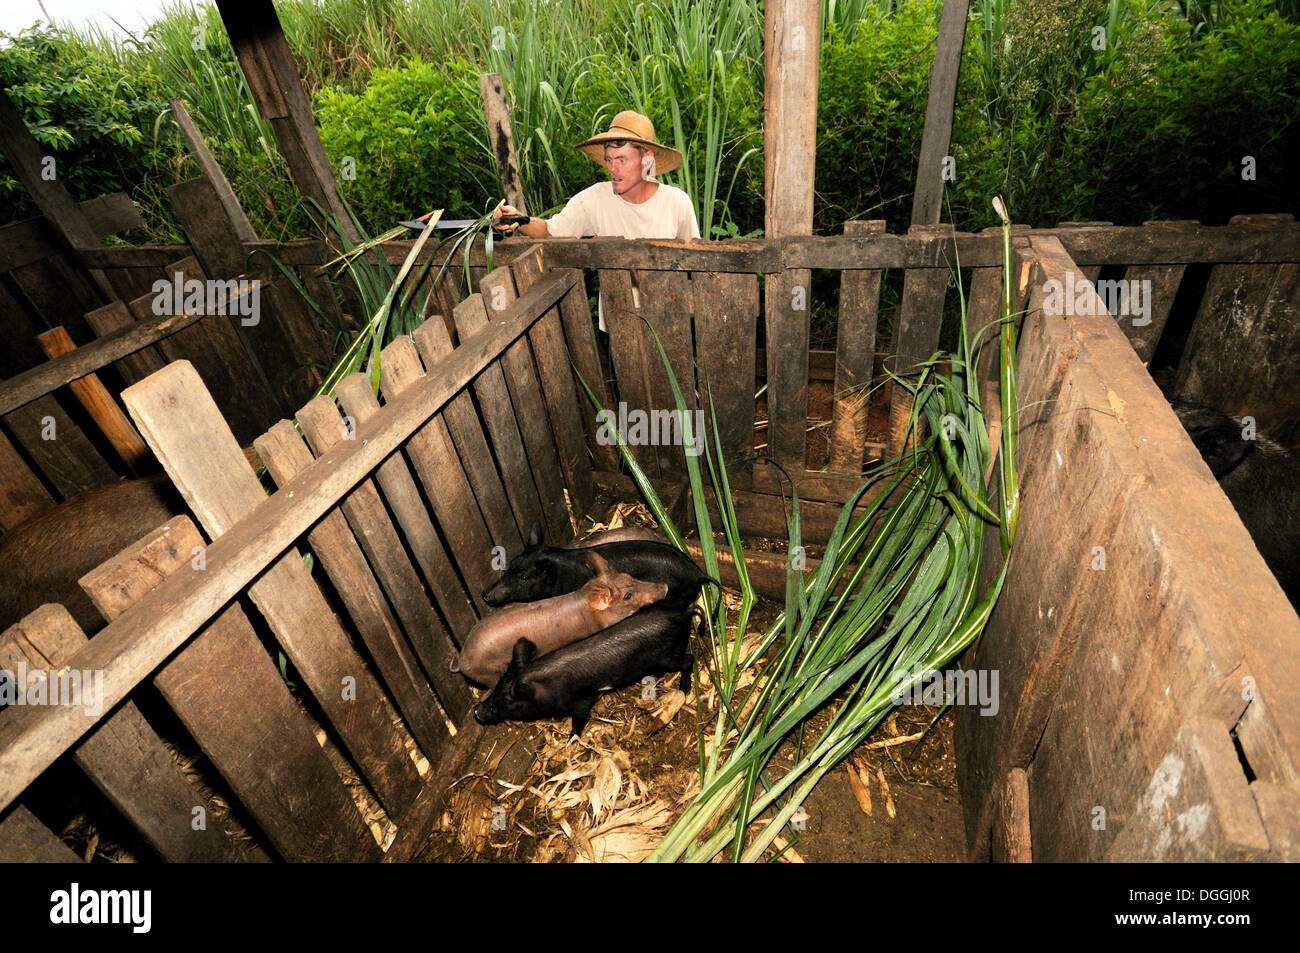 Agricoltore alimentazione dei maiali con la canna da zucchero, piccola agricoltura in un ex insediamento di contadini senza terra, la riforma fondiaria Foto Stock